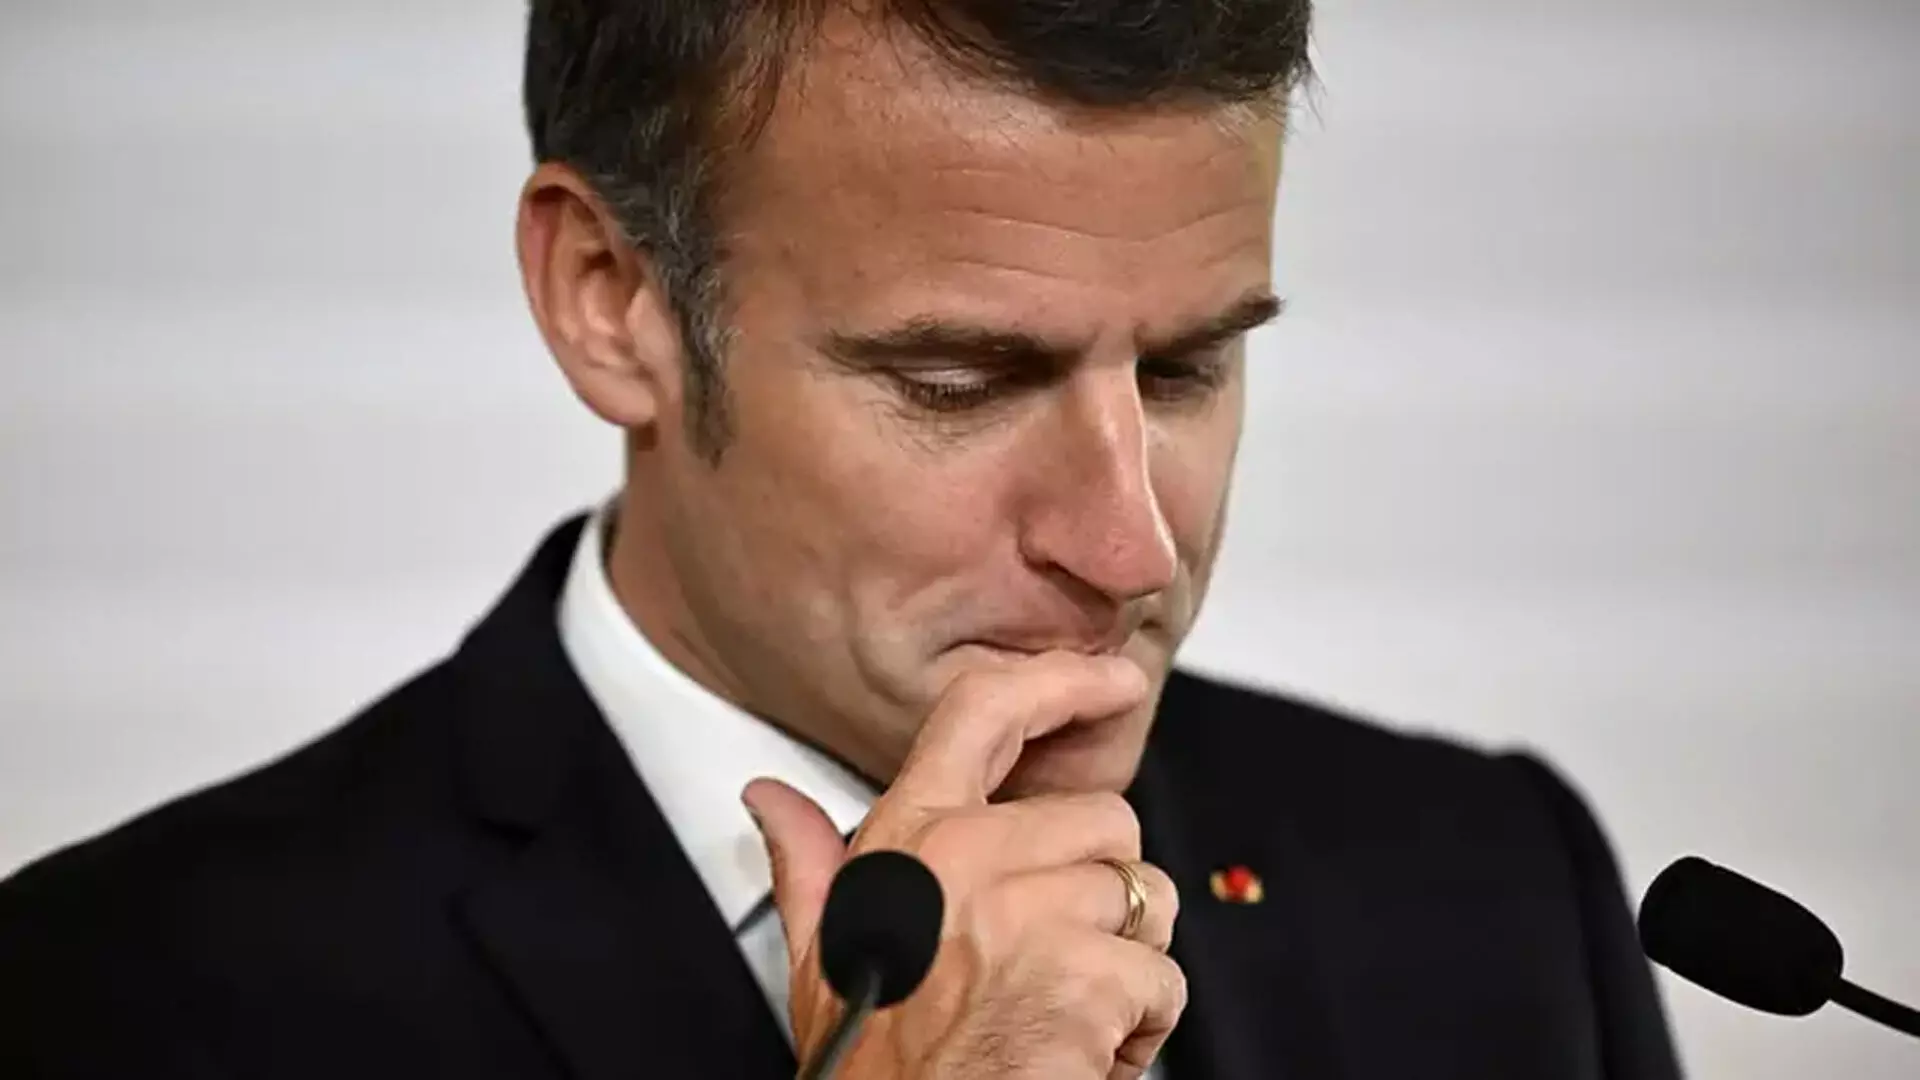 France में समय से पहले चुनाव होने से इमैनुएल मैक्रों की स्थिति कमजोर